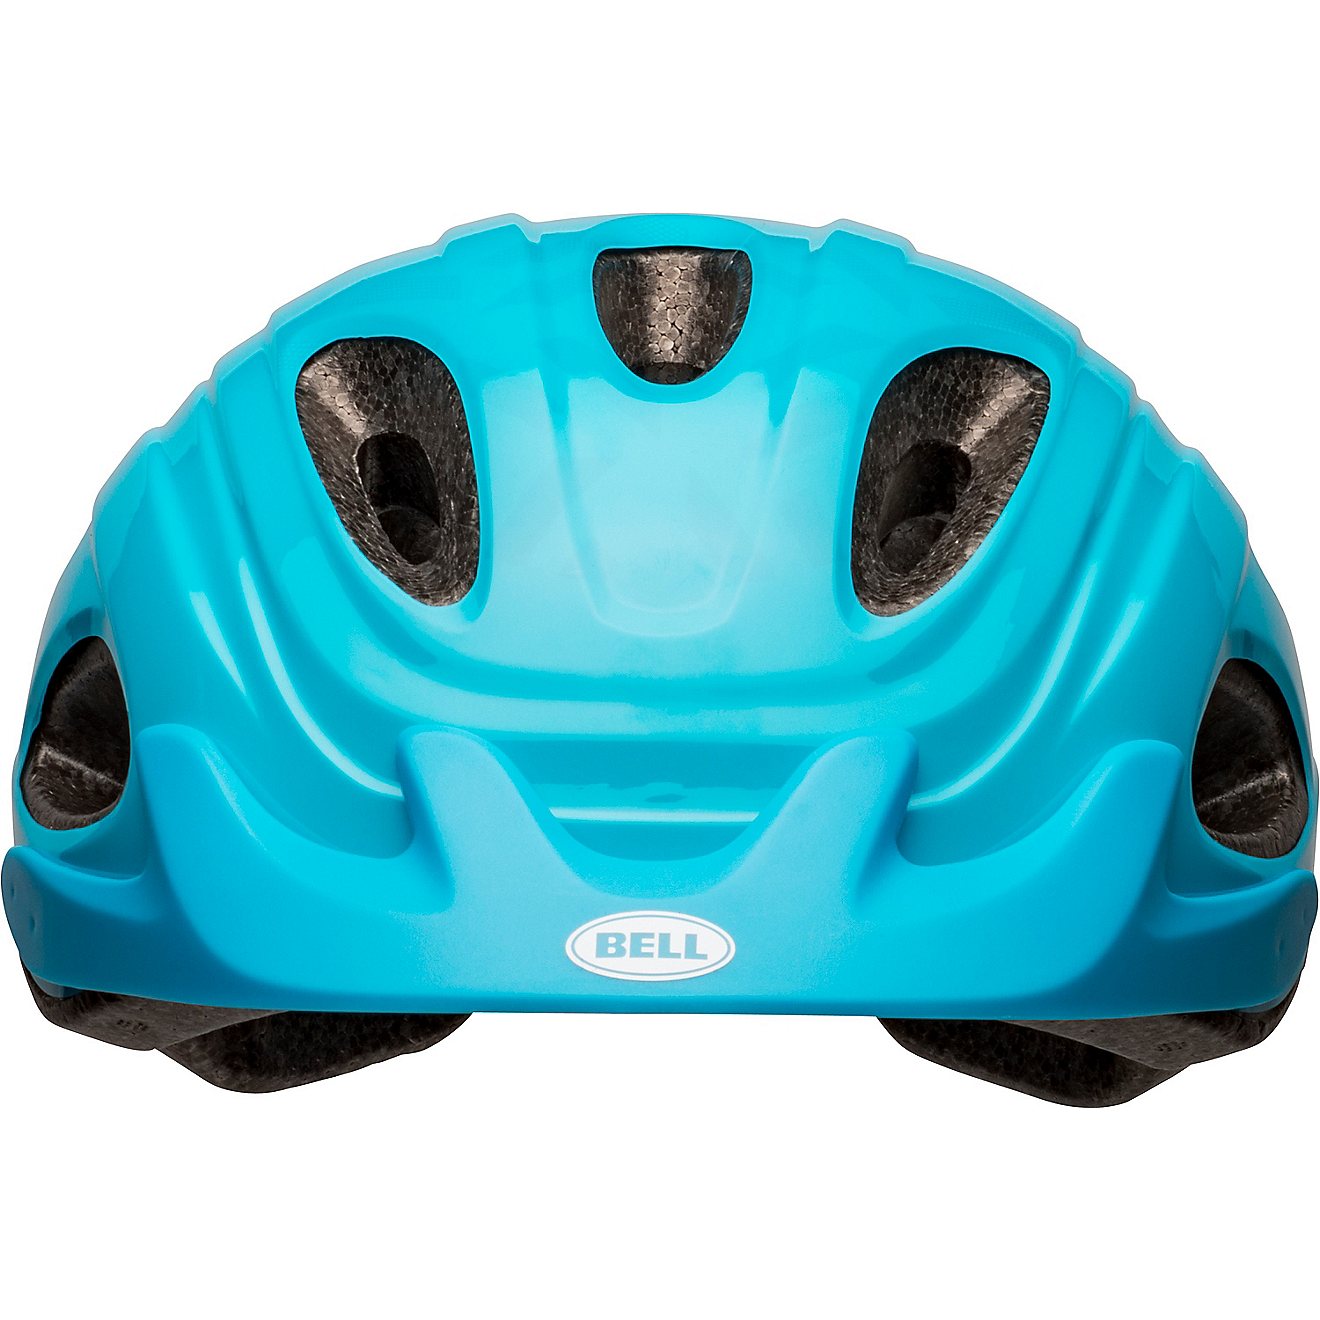 Bell Women’s Glow Bike Helmet                                                                                                  - view number 4